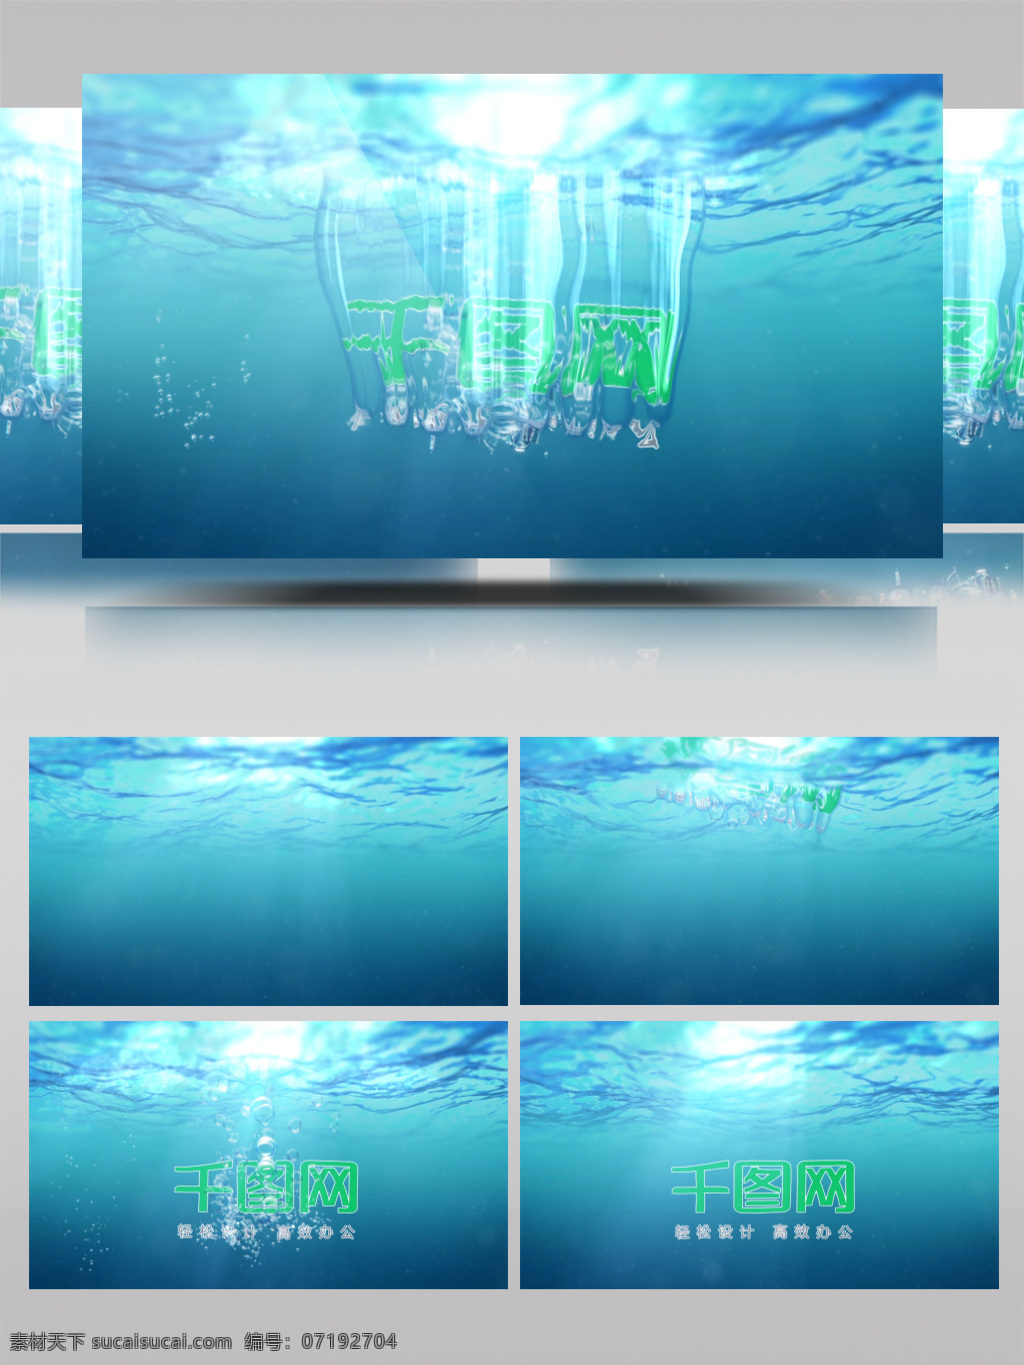 入 水 特效 ae 模板 视频素材 清新 自然 绿色 健康 防水 电视广告 logo 视频片头 logo演绎 ae模板 水下宫殿 水下城堡 水下世界 水下起舞